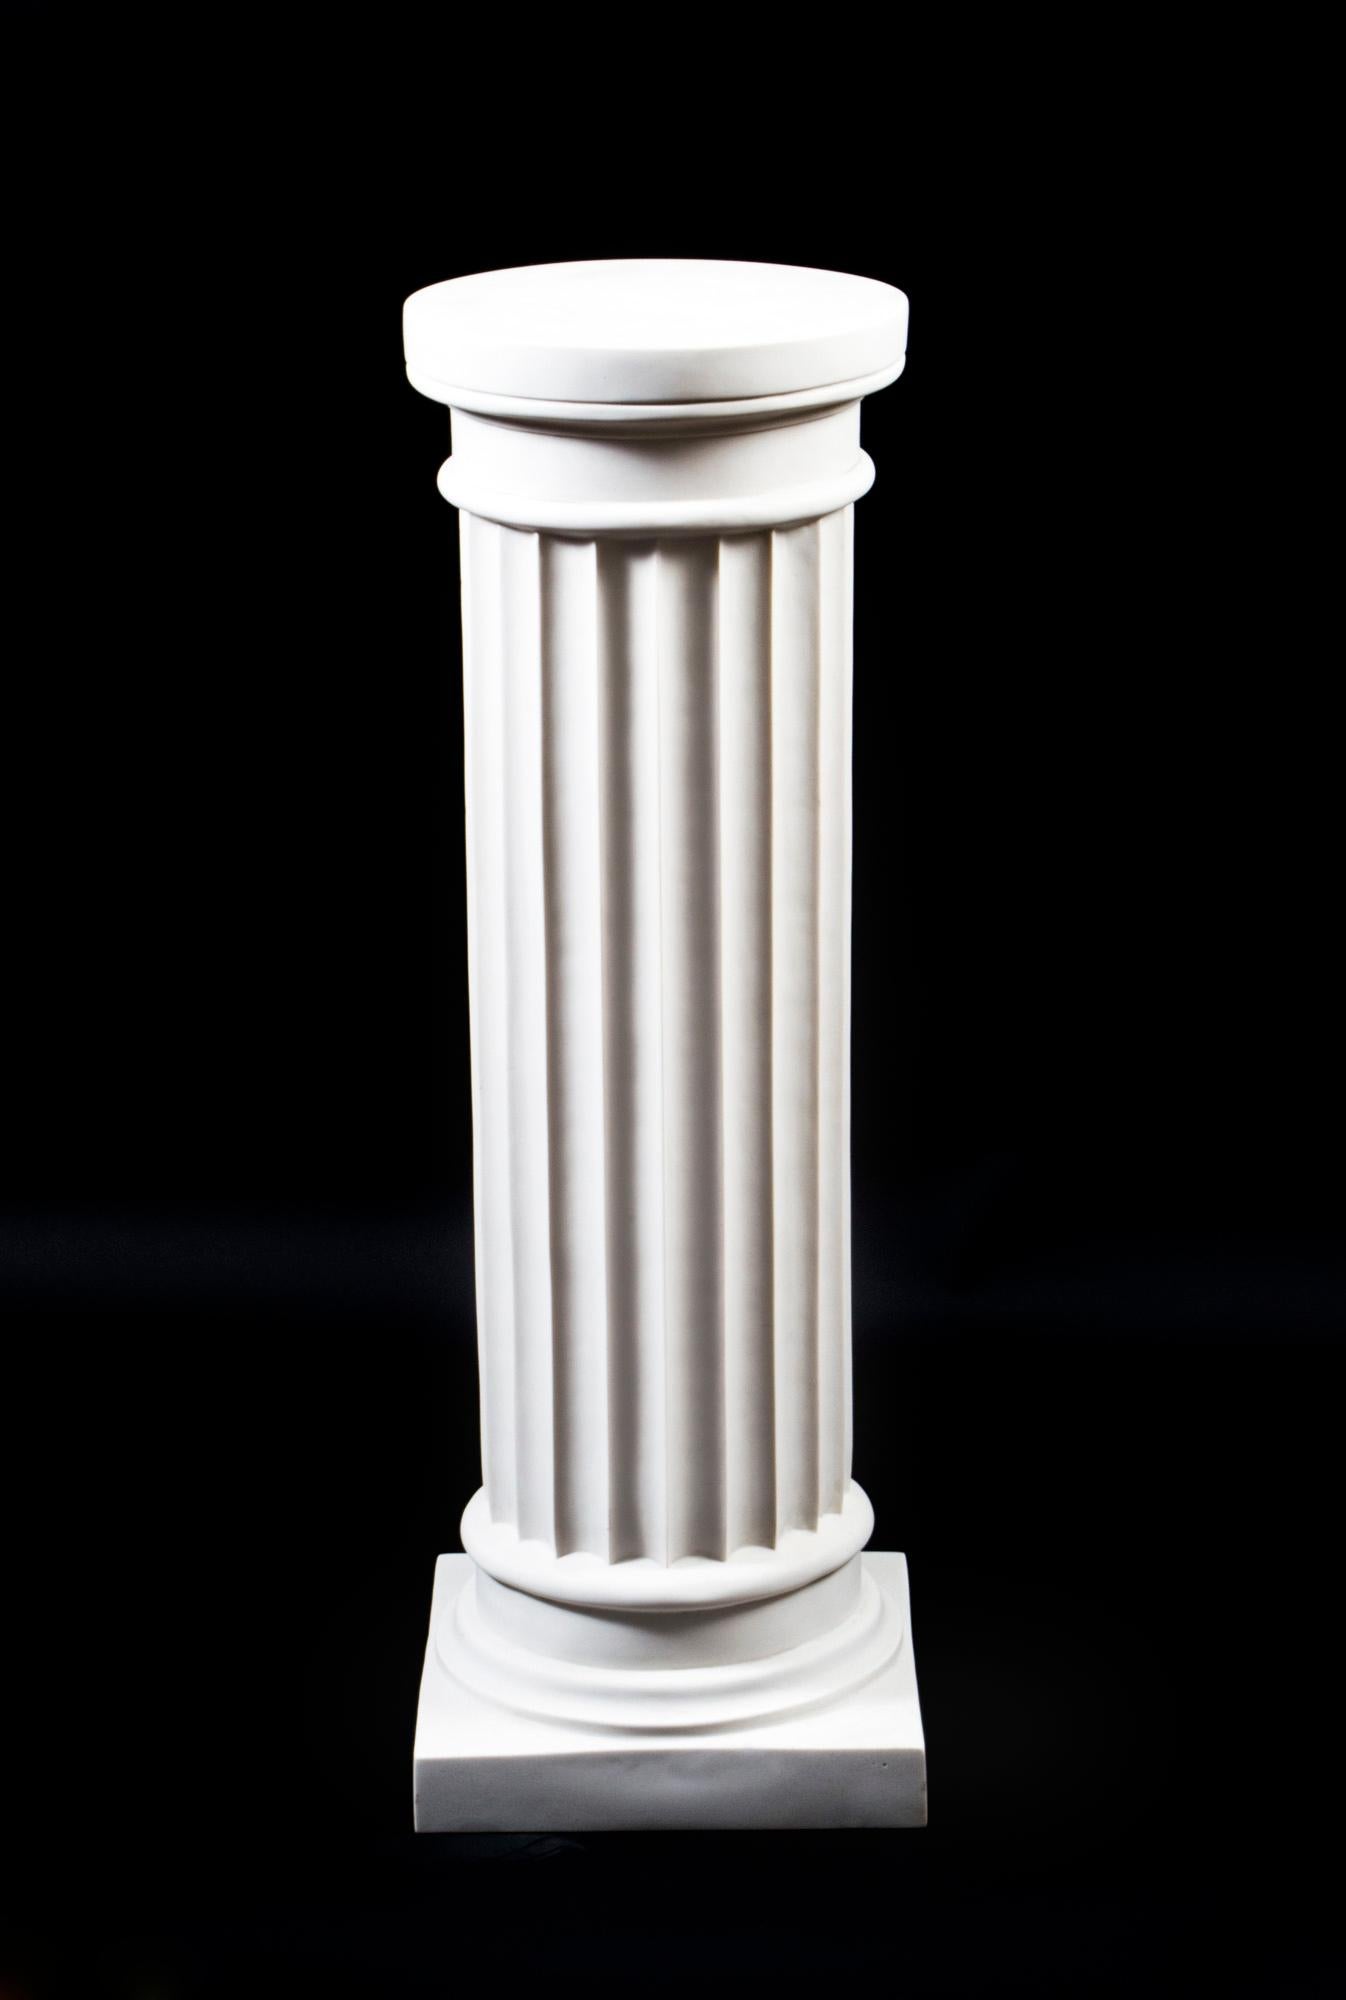 Ein eleganter Sockel in Form einer klassischen altgriechischen dorischen Säule aus dem letzten Viertel des 20. Jahrhunderts. 

Die Säule hat einen kannelierten Korpus mit einem schlichten und unverzierten Säulenkapitell und verjüngt sich zum Sockel